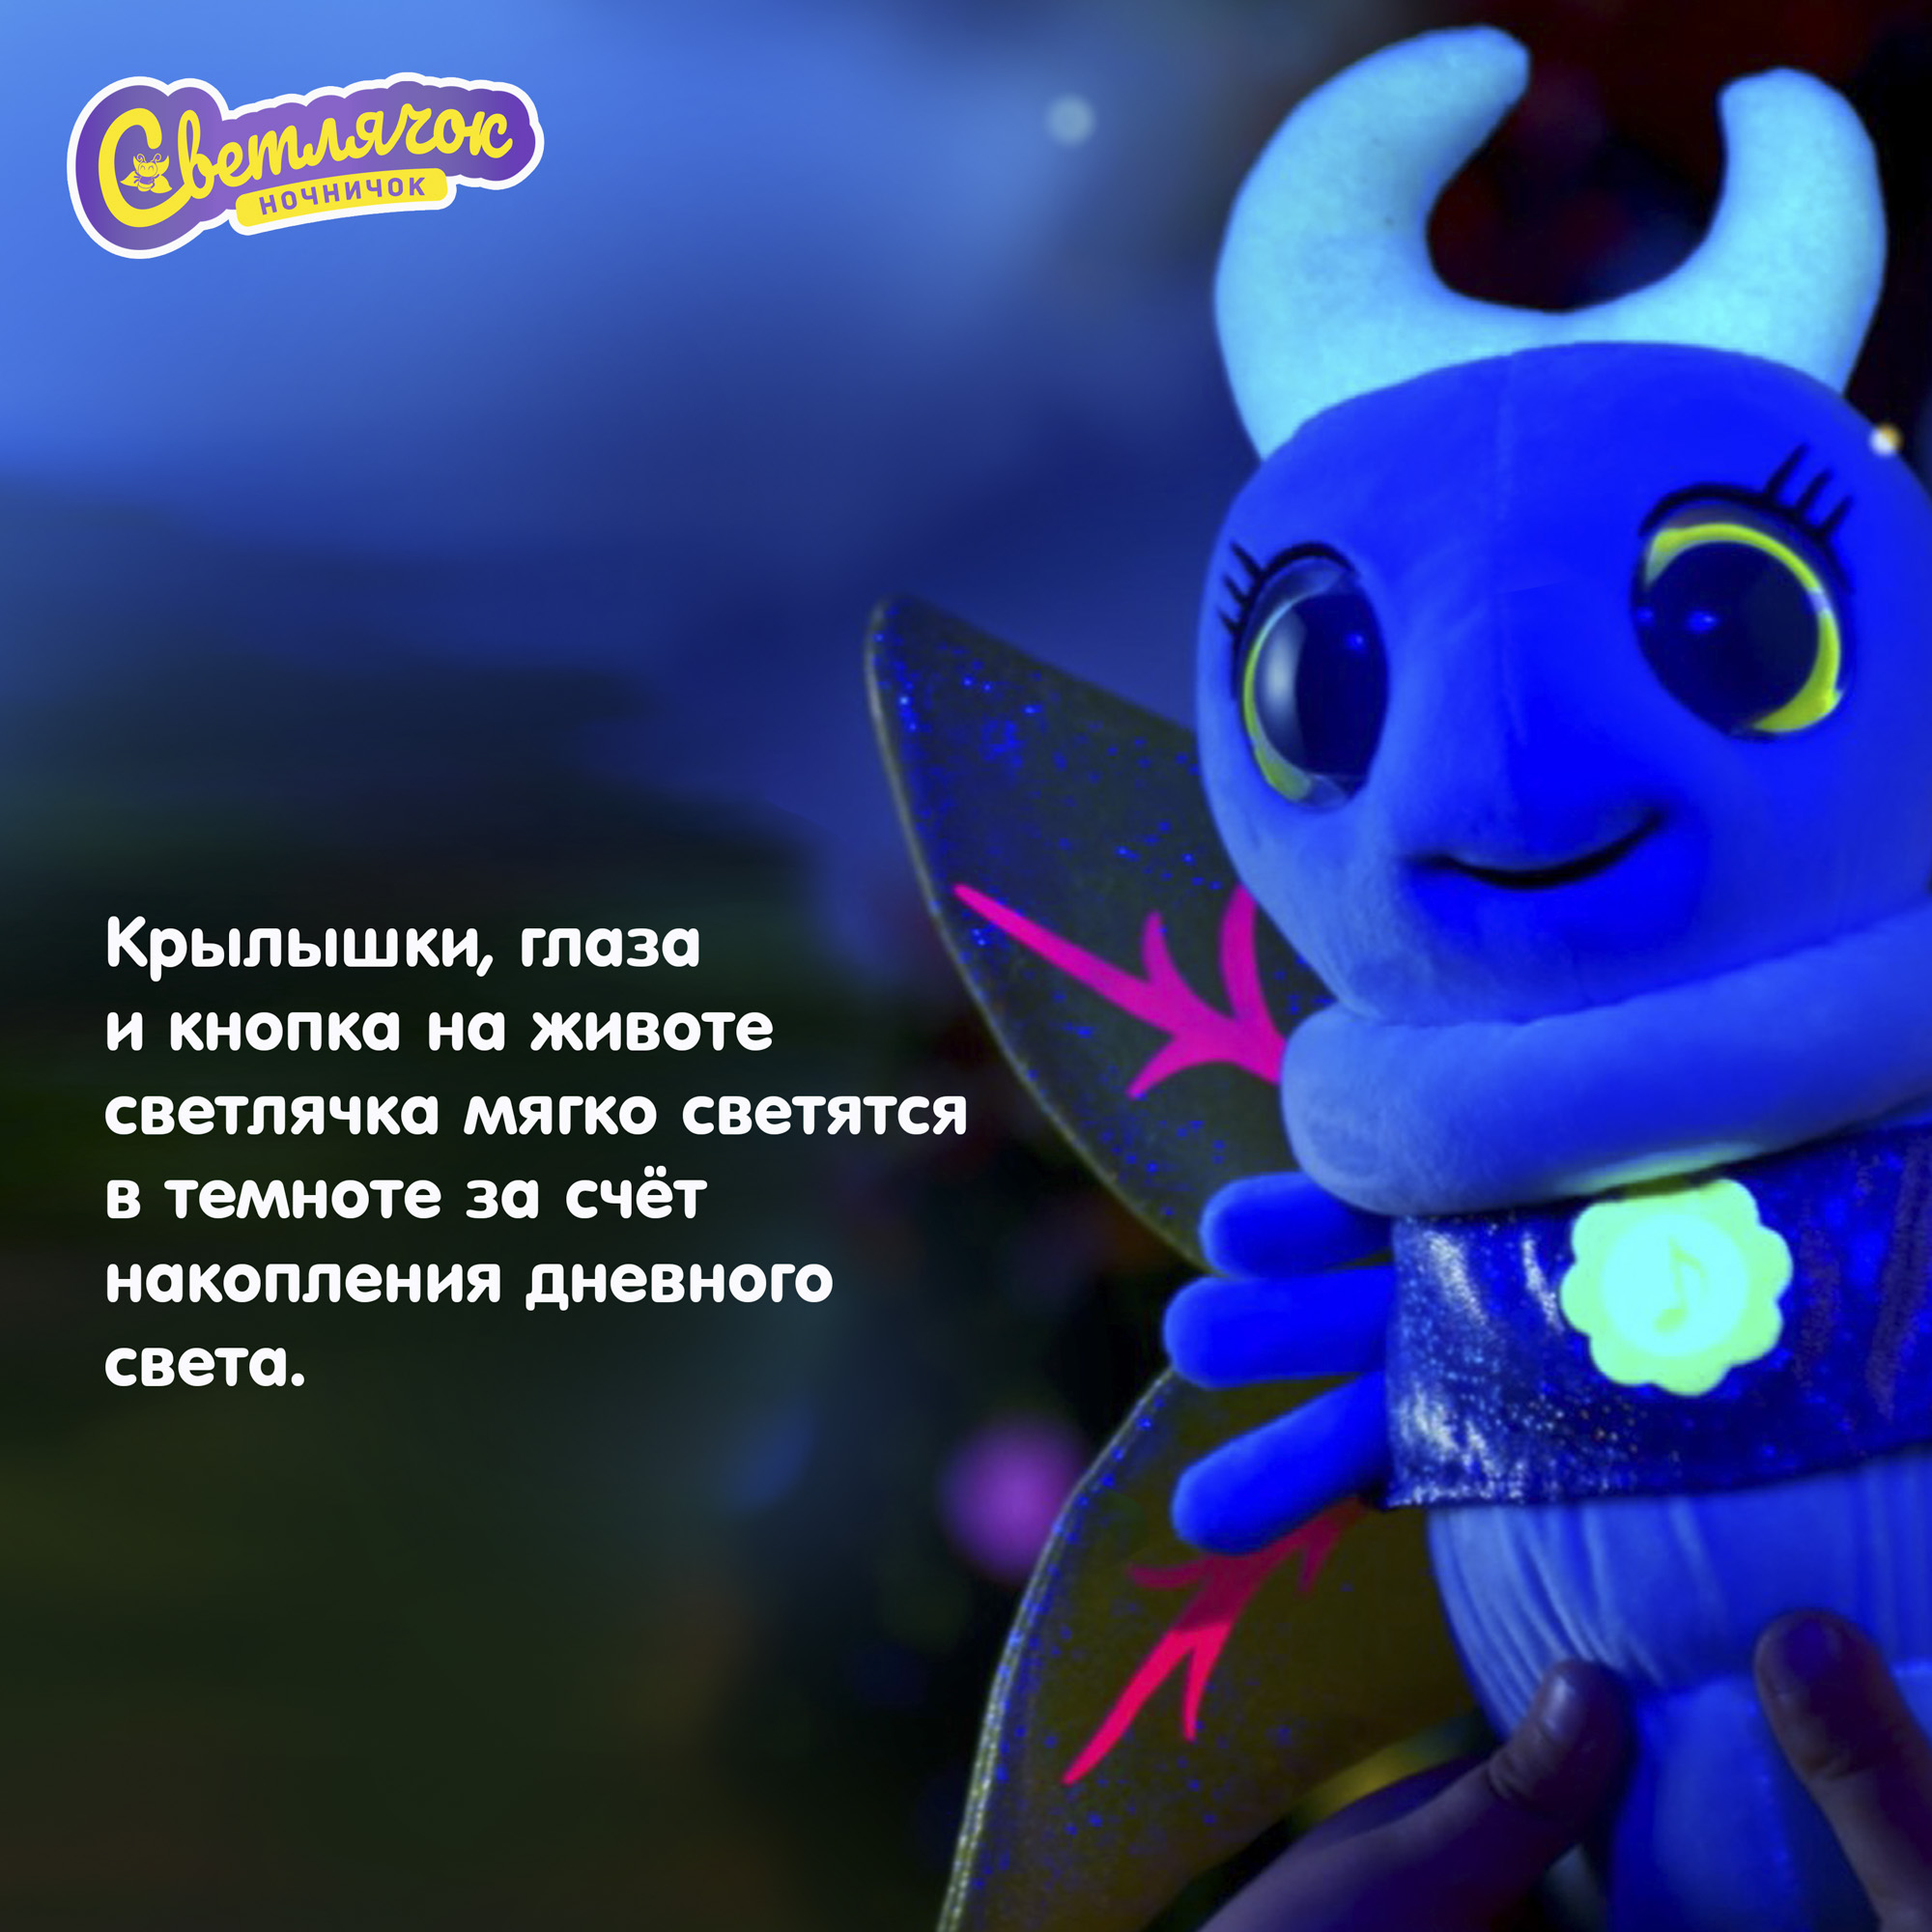 Игрушка интерактивная Светлячок ночничок музыкальная мягкая цвет голубой - фото 9